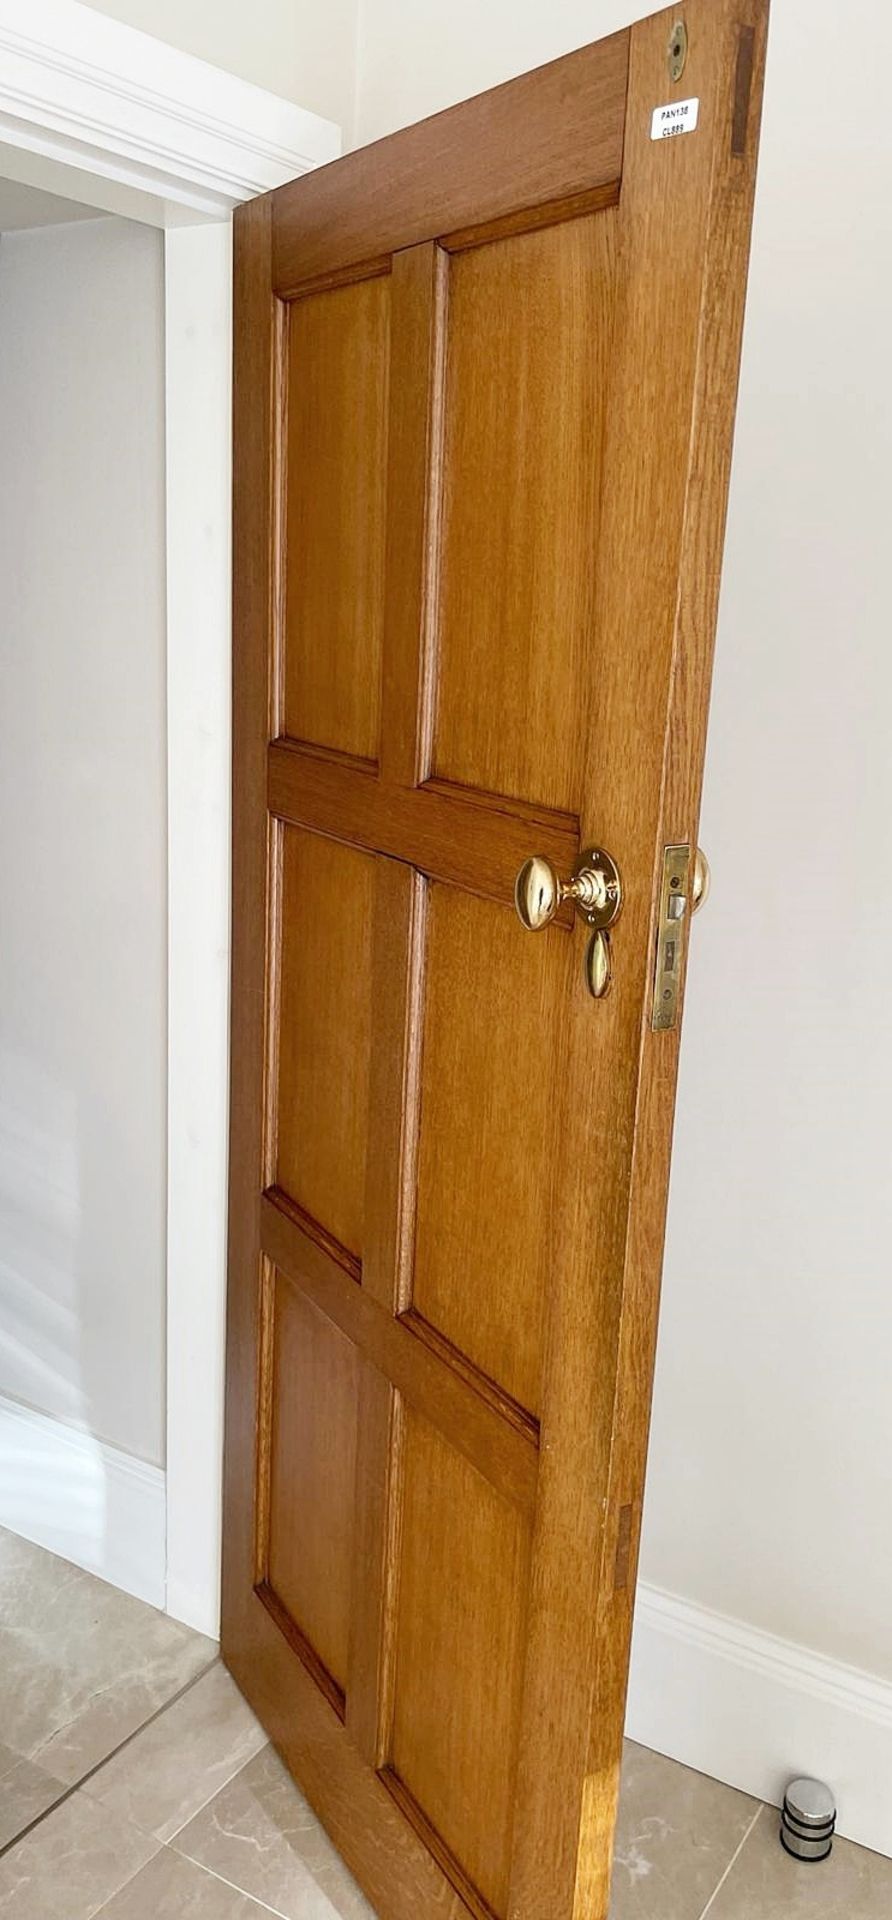 1 x Solid Wood Lockable Internal Door - Ref: PAN138 / 2MainKIT - CL896 - NO VAT ON THE HAMMER - - Image 2 of 7